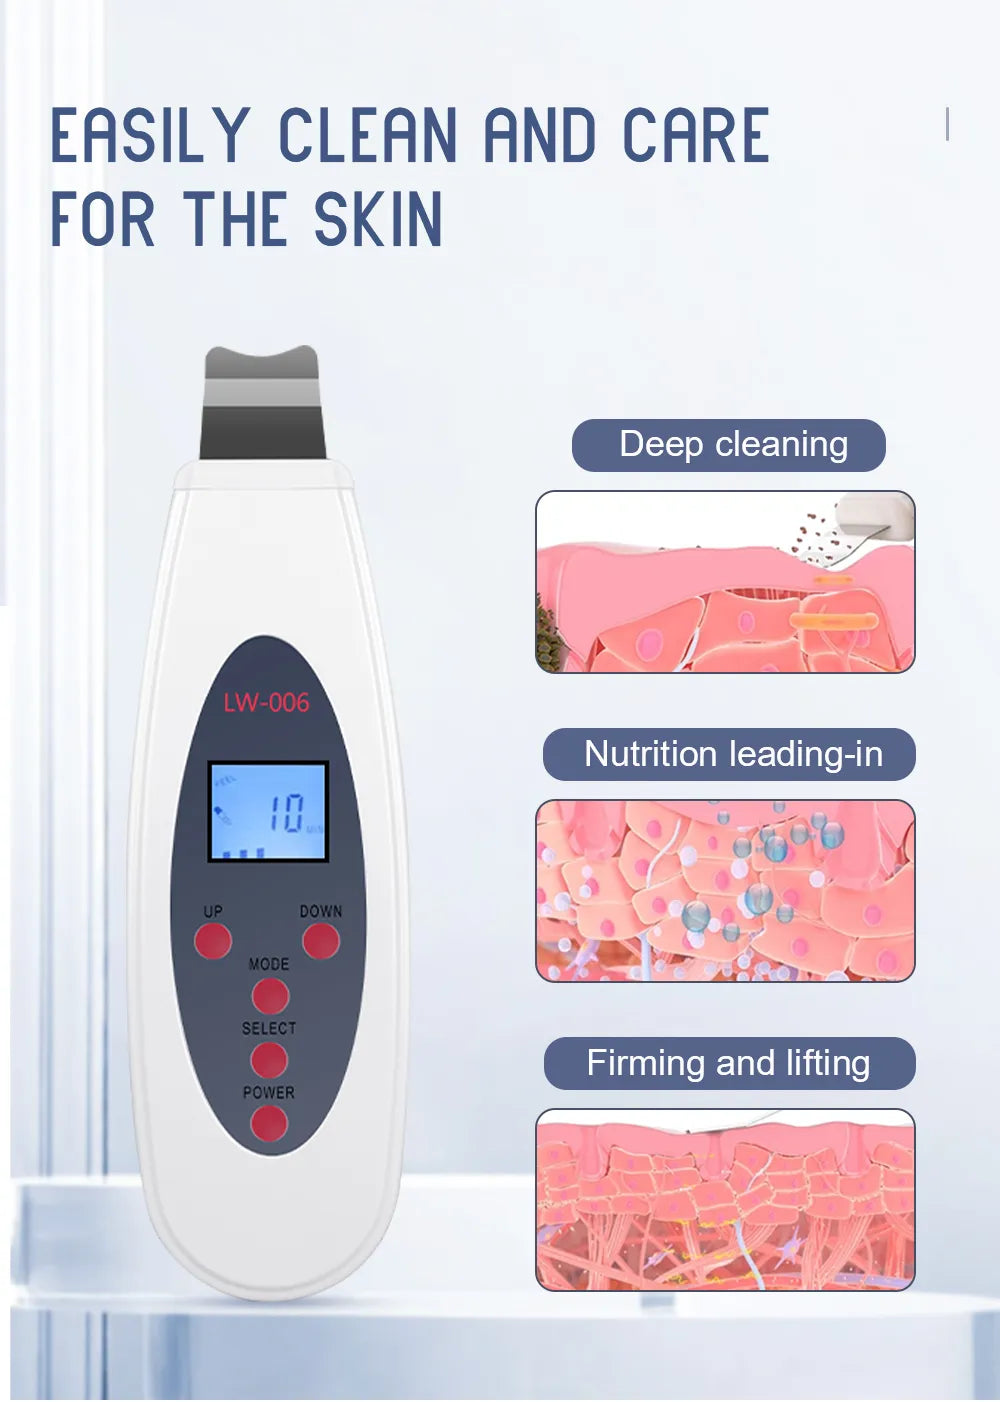 UltraCleanse™ Pro Ultrasonic Skin Scrubber